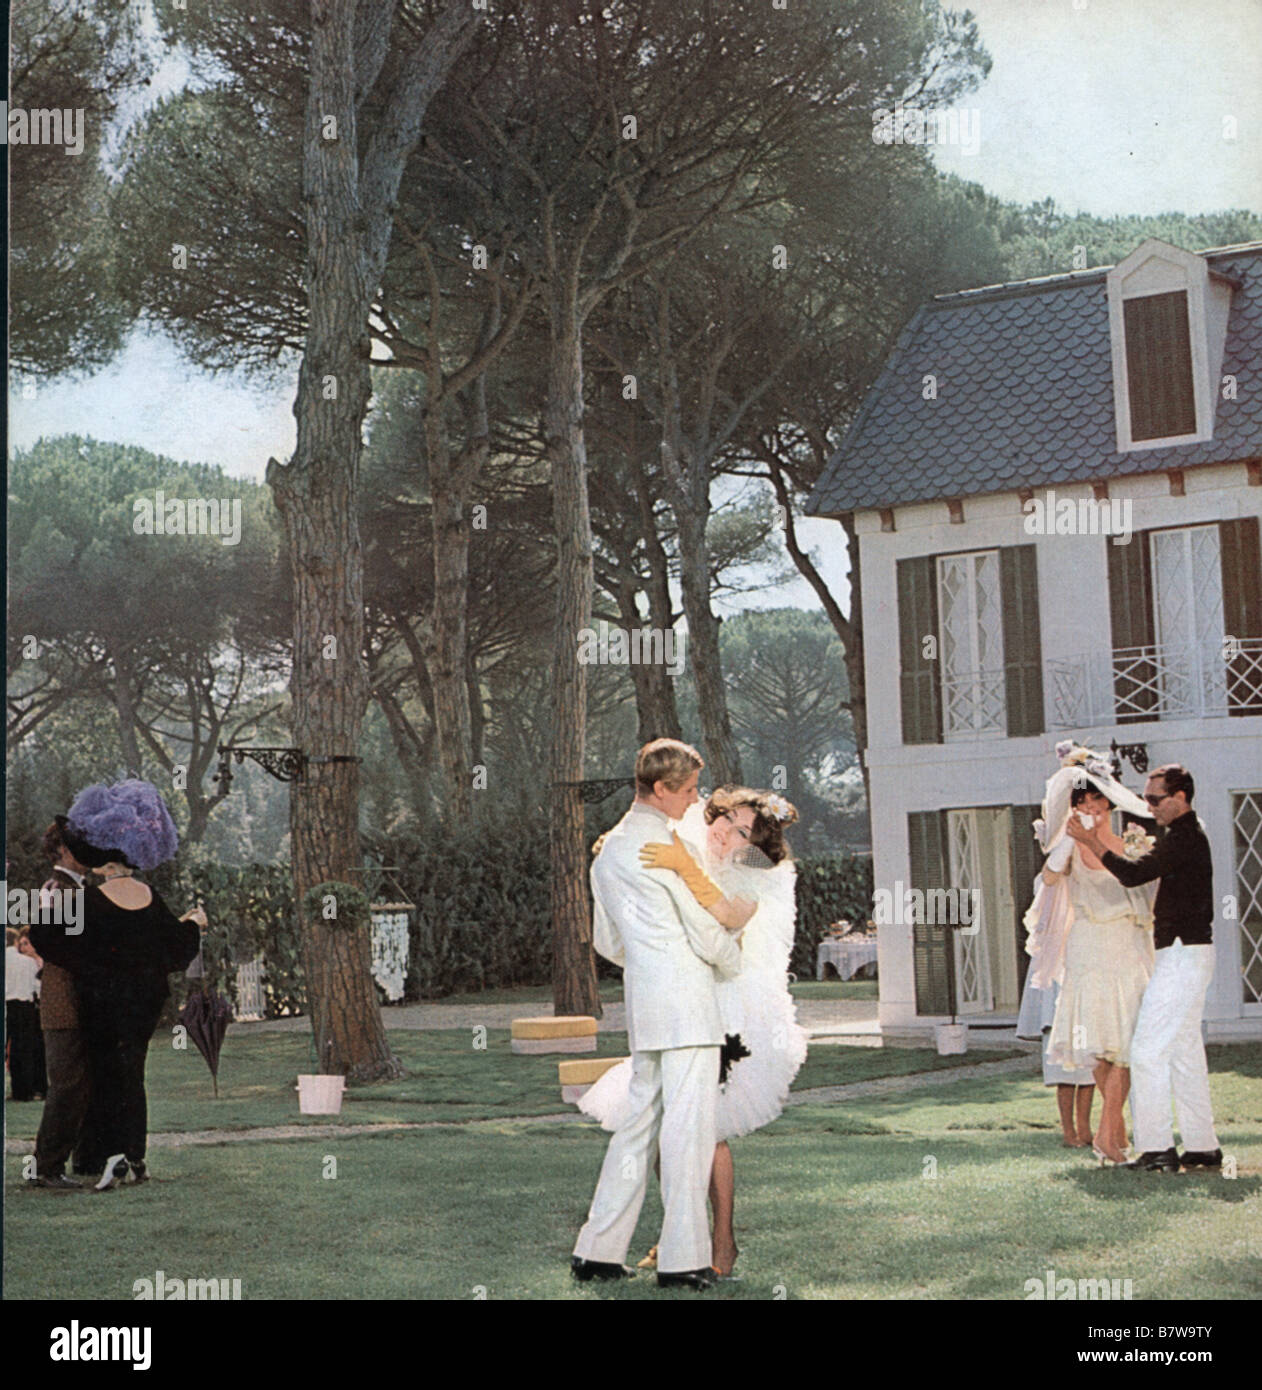 Giulietta degli spiriti Año: 1965 - Italia Director: Federico Fellini Foto de stock